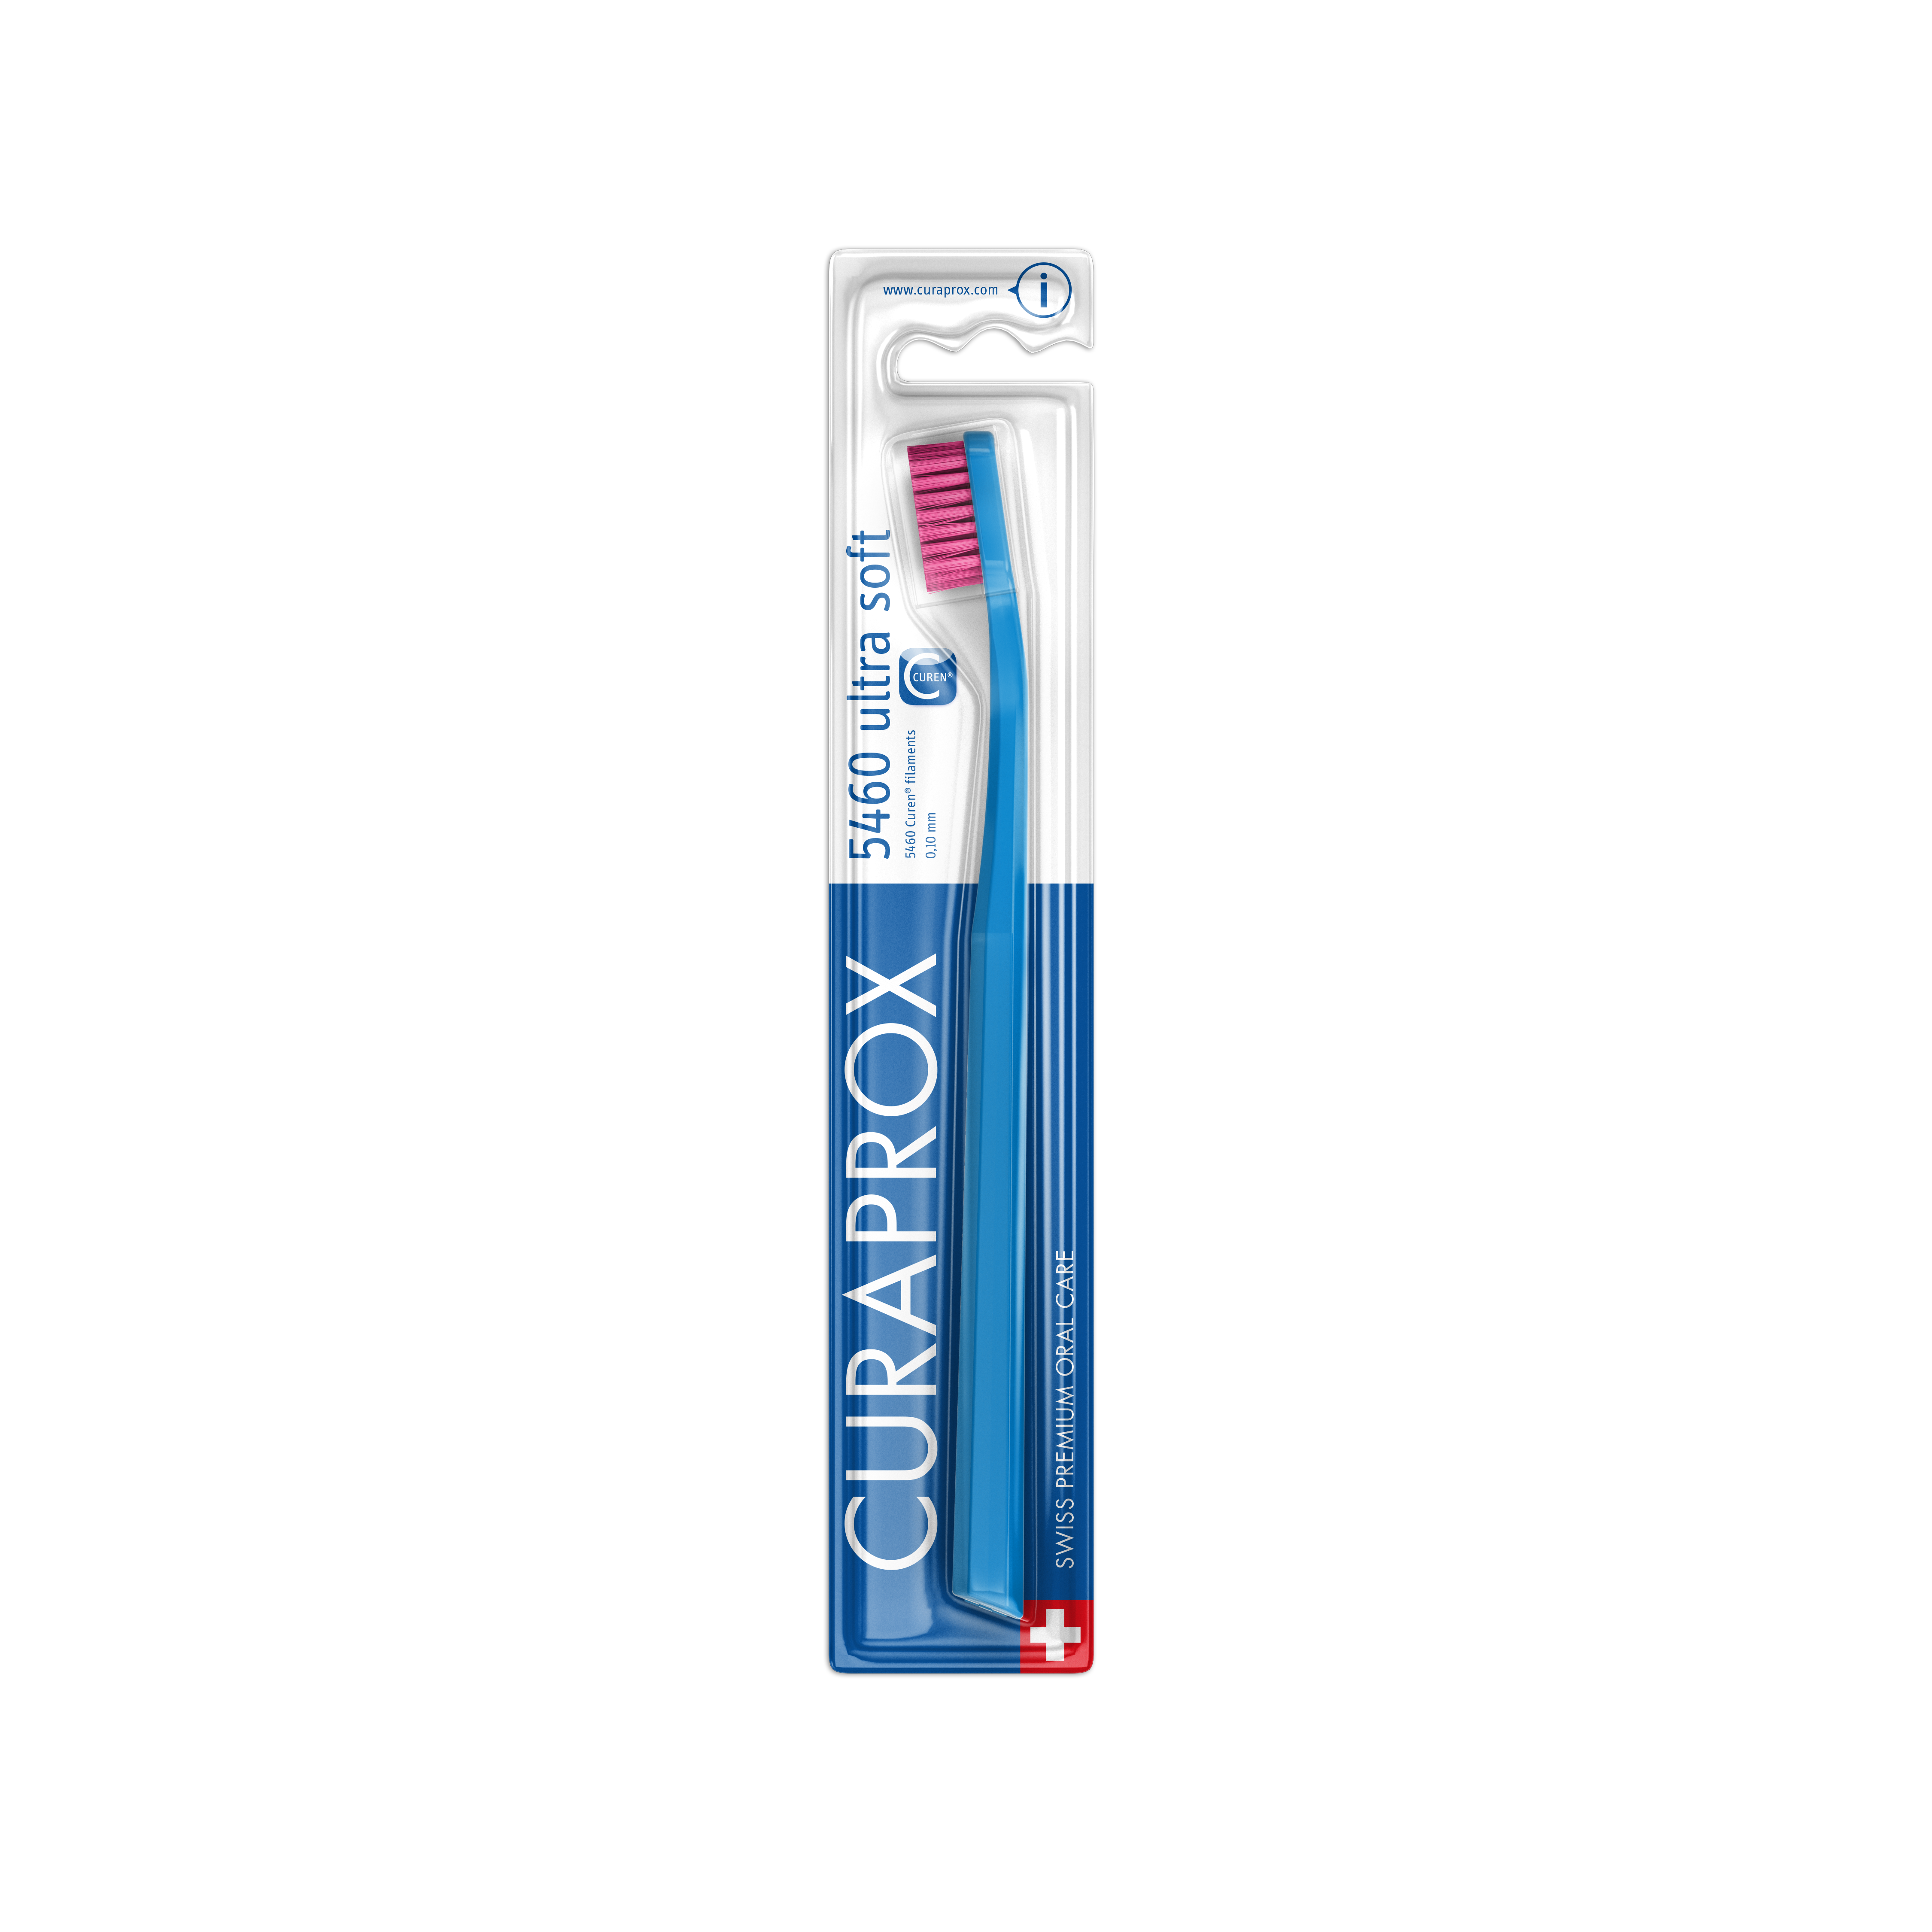 73327437 Packshot Toothbrush Cs5460 Blue Pink